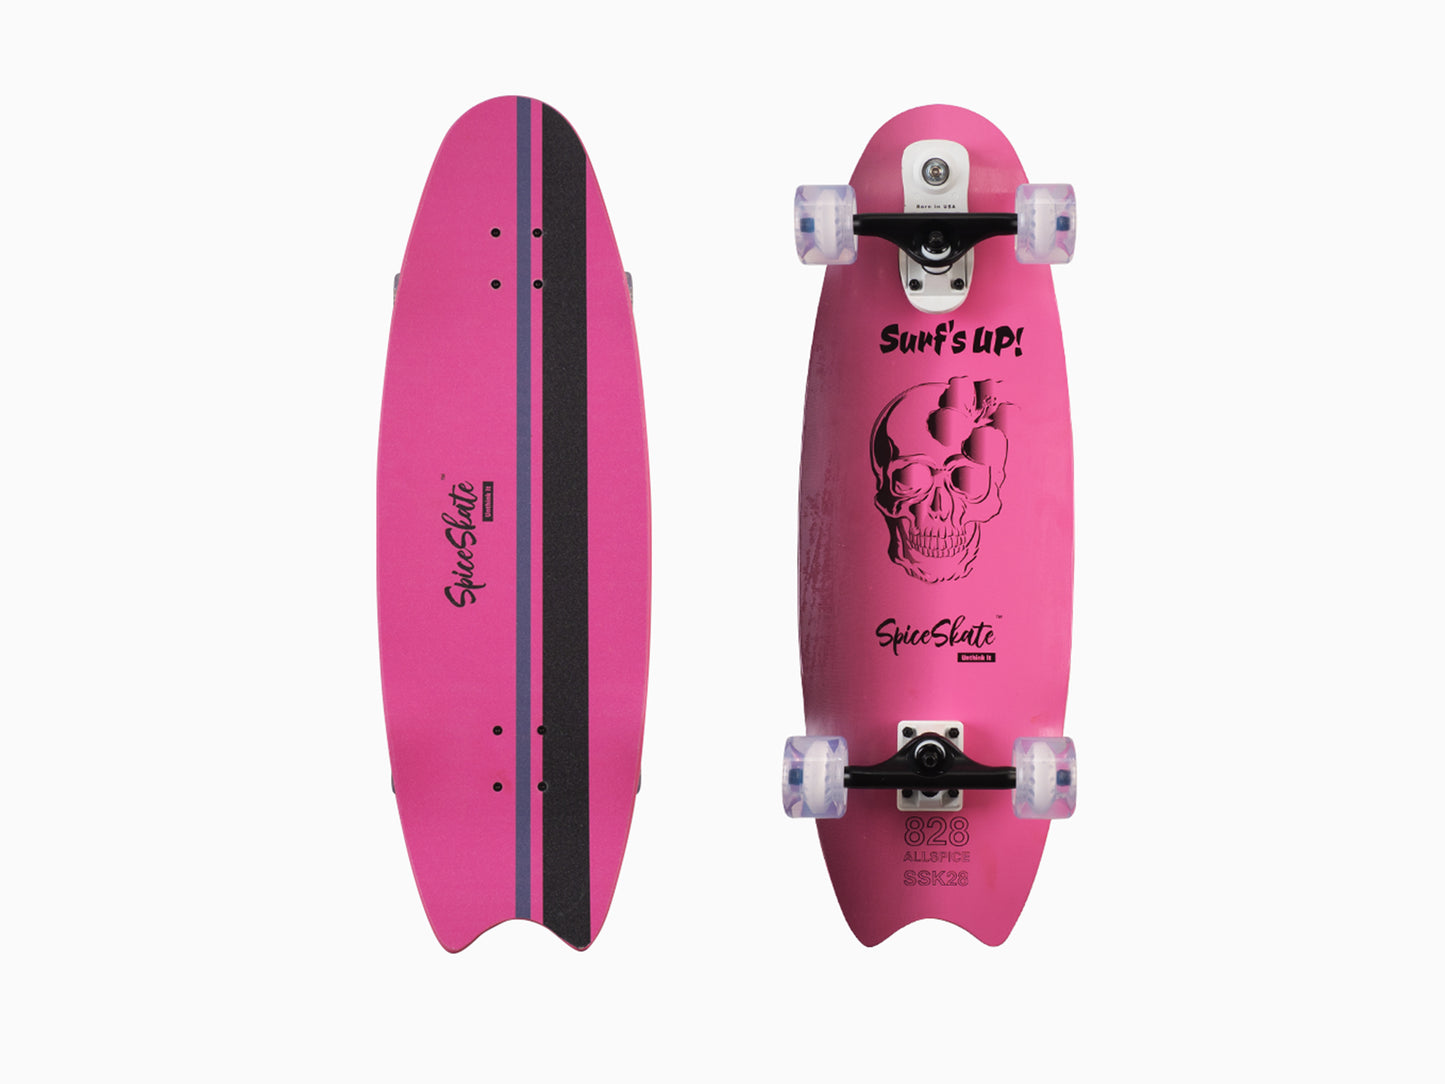 SpiceSkate SurfSkate Type S |   ALLSPICE 828